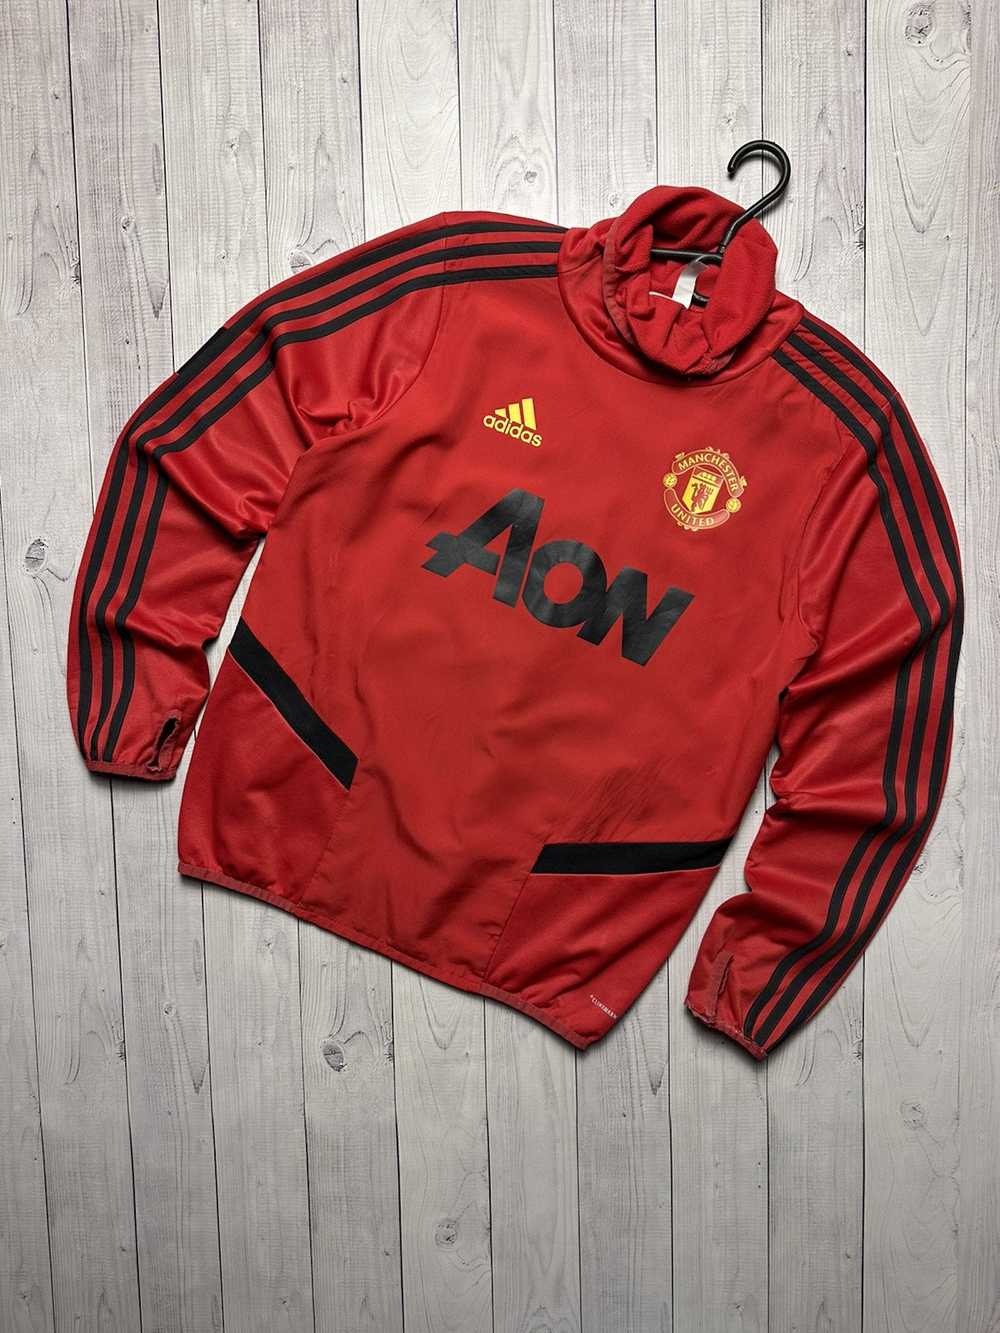 Adidas × Manchester United × Vintage Vintage adid… - image 1